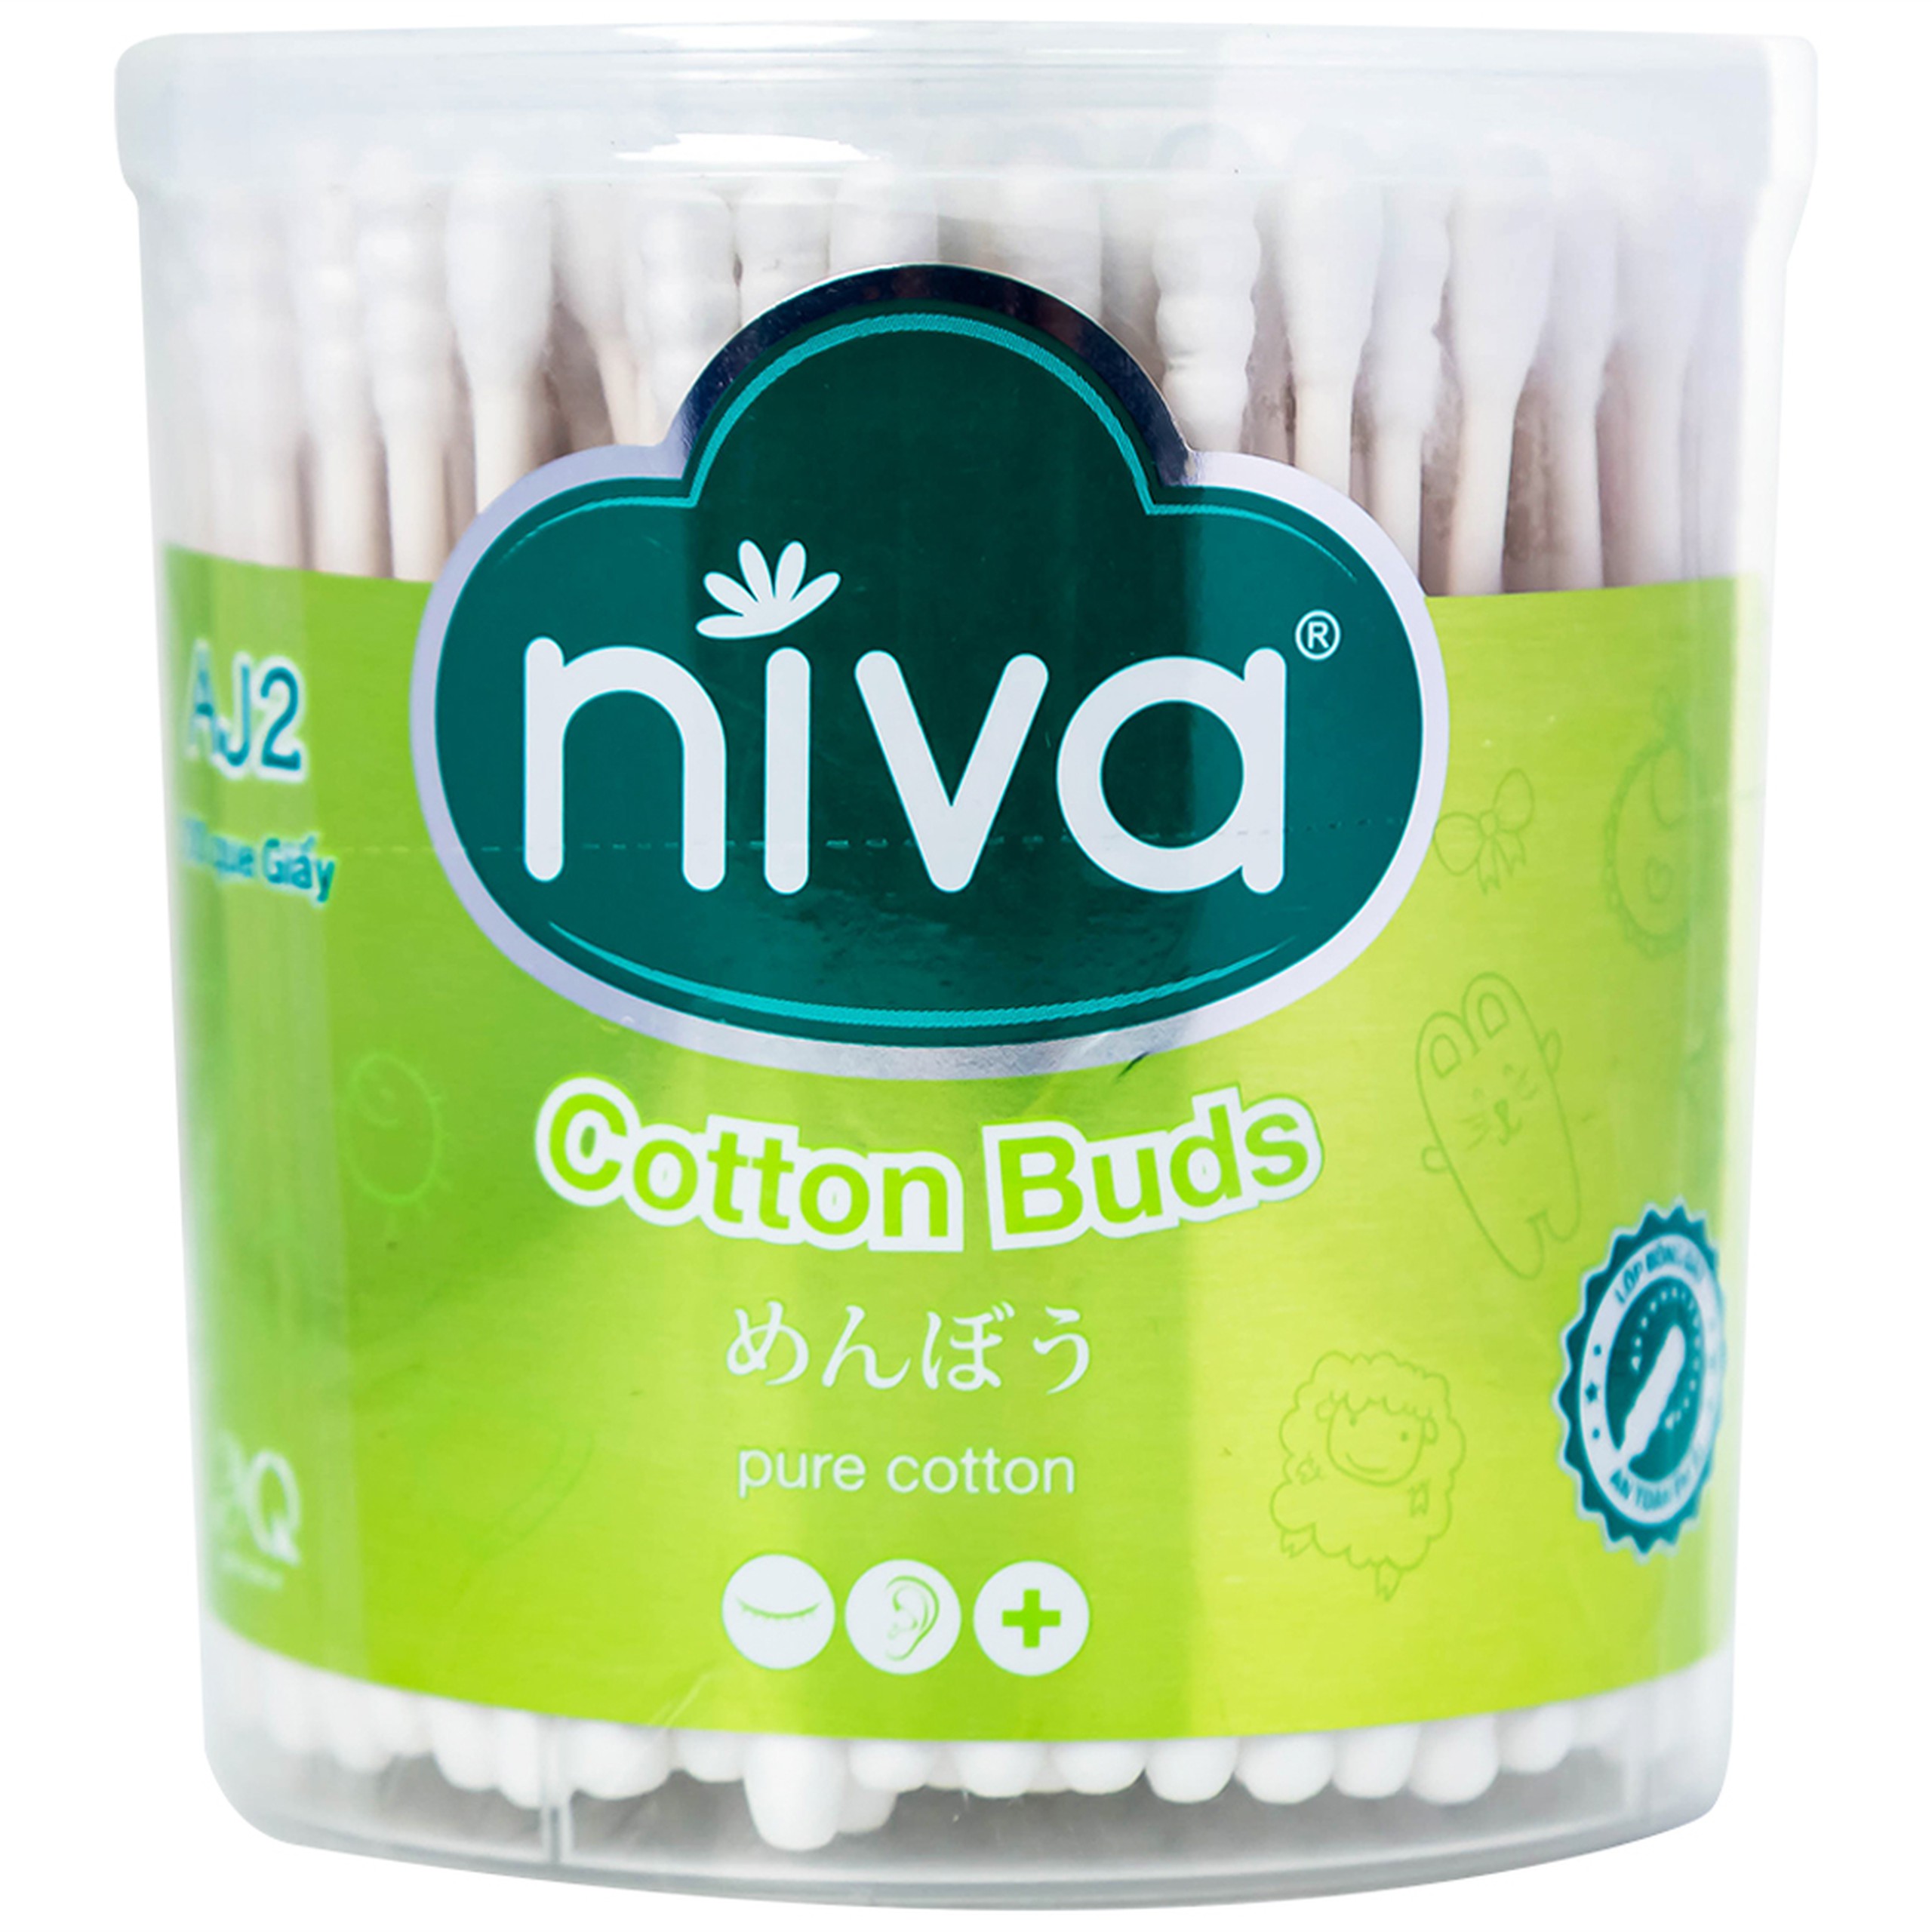 Tăm bông Niva Cotton Buds AJ2 thân giấy 1 đầu tròn 1 đầu xoắn vệ sinh tai, mũi, vết thương (200 que)